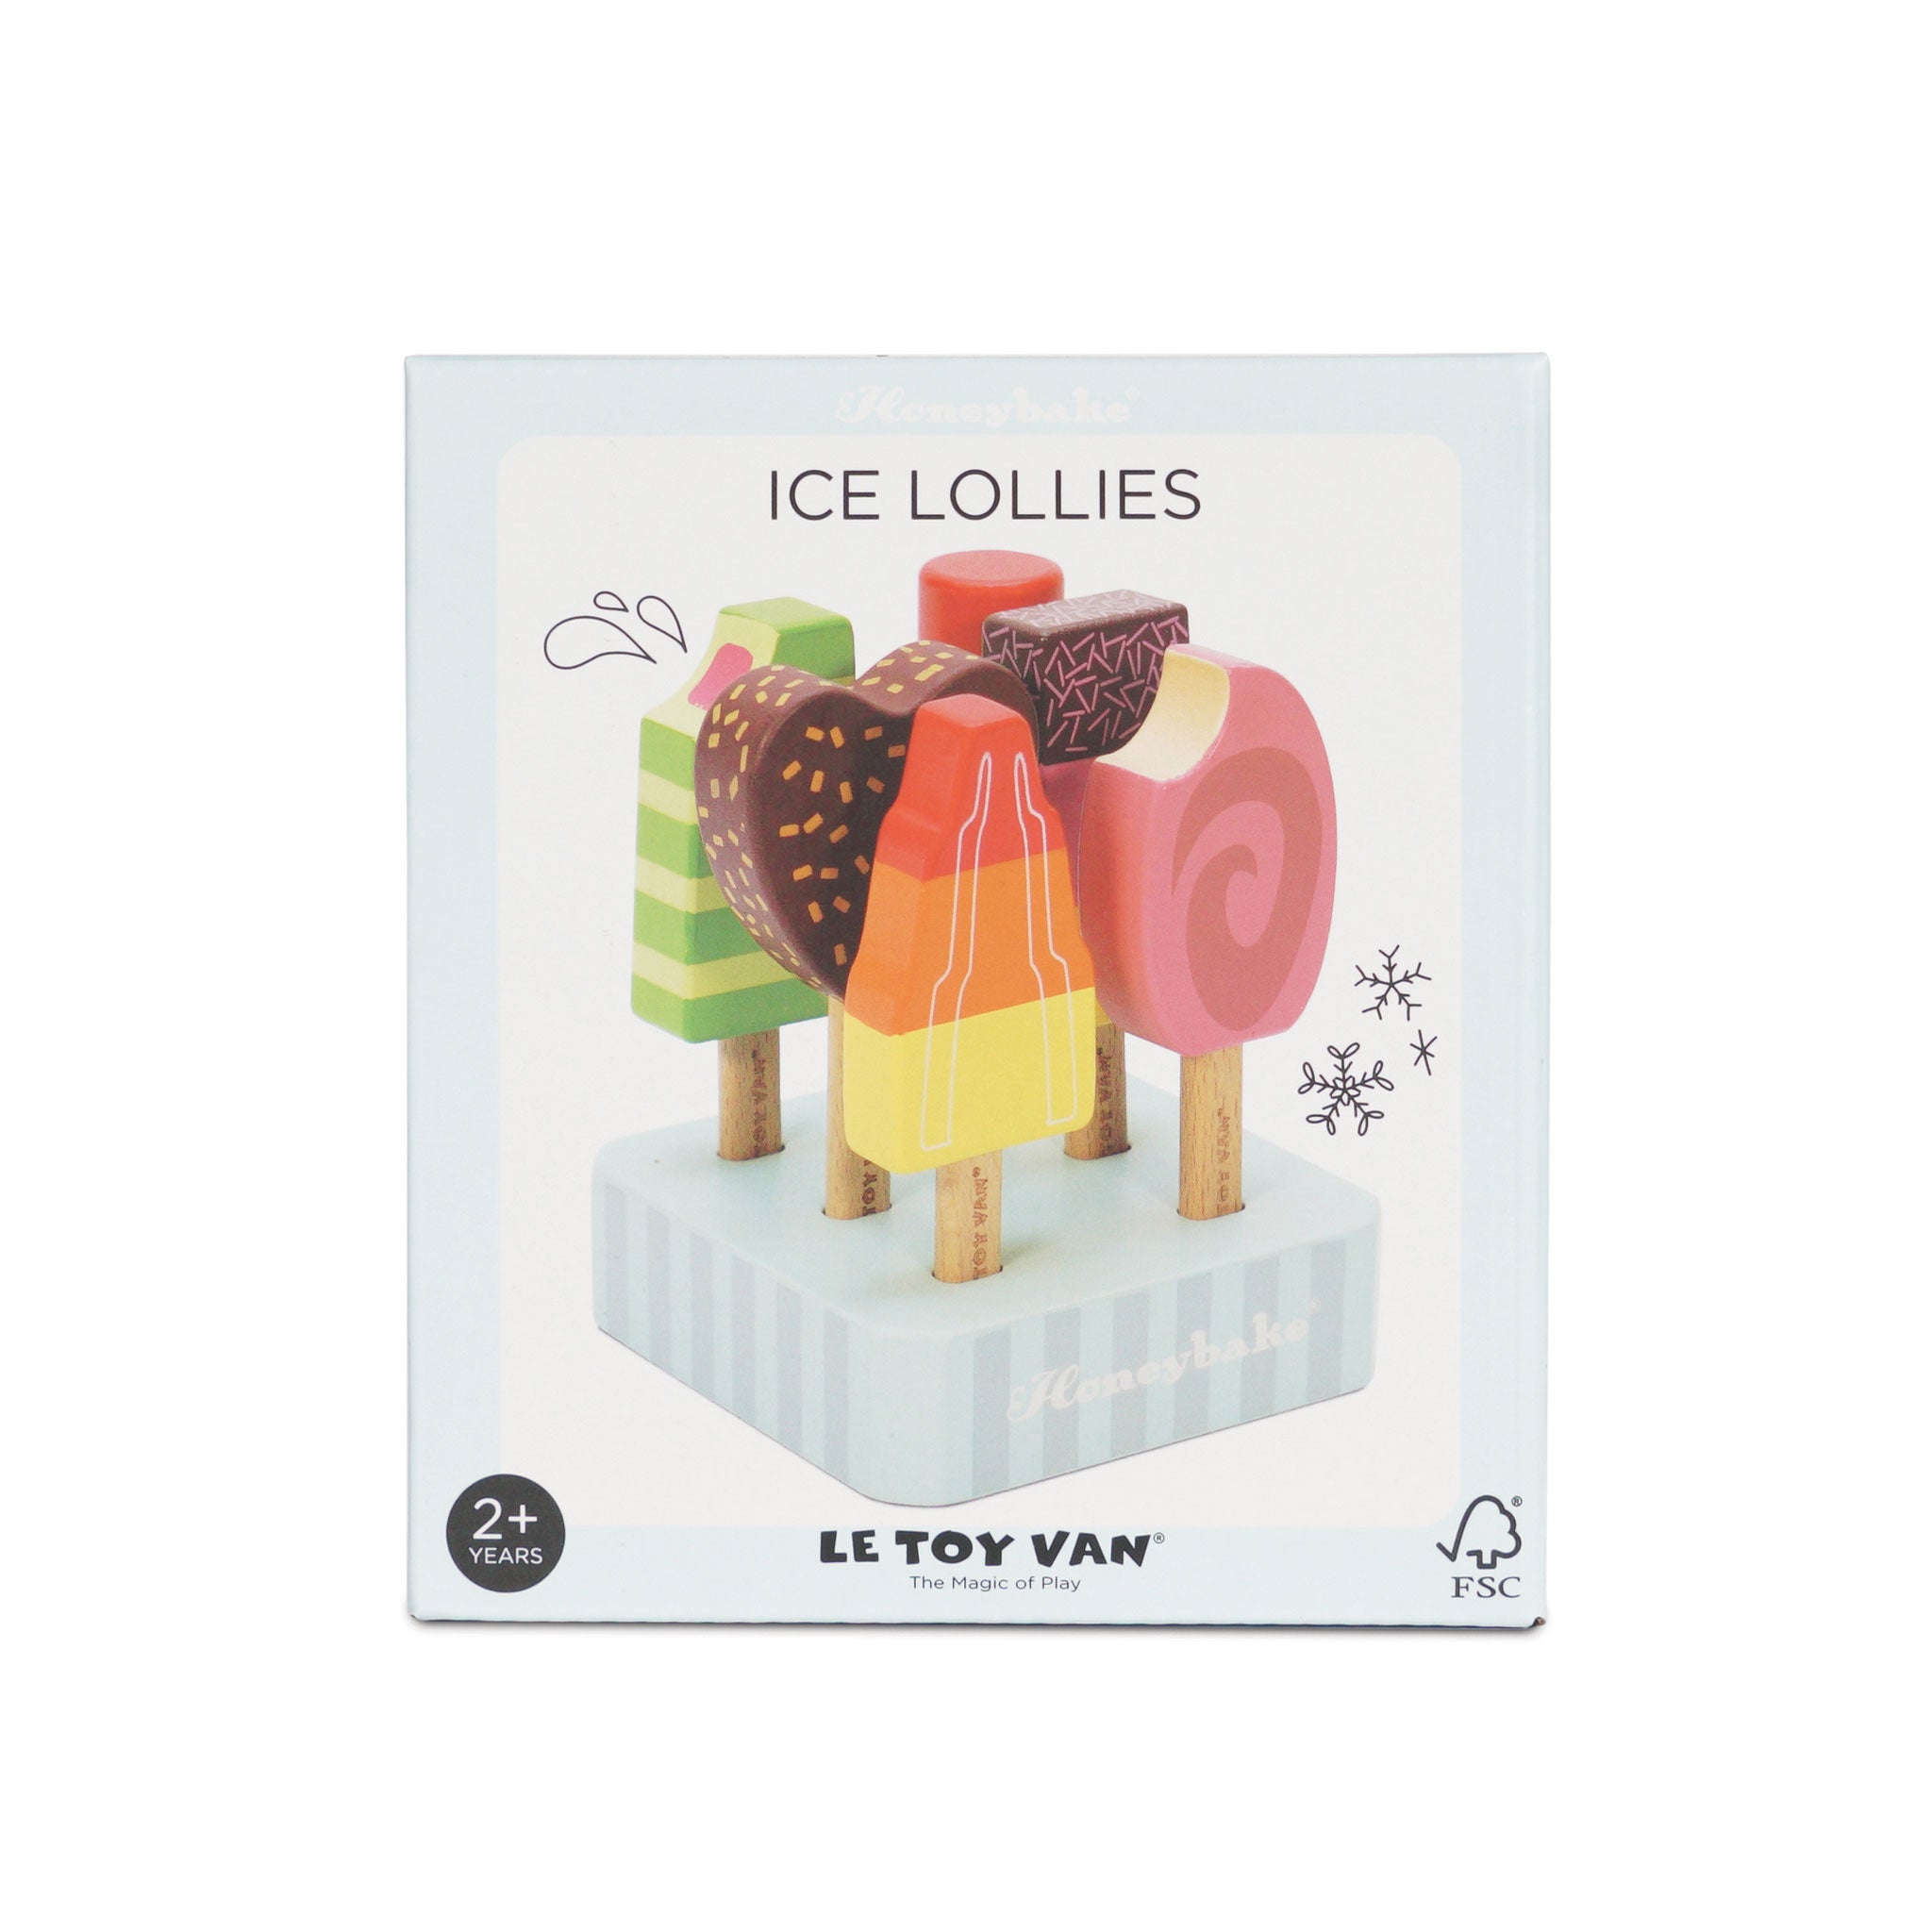 Le Toy Van Wooden Ice Lollies & Ice Cream Play Set